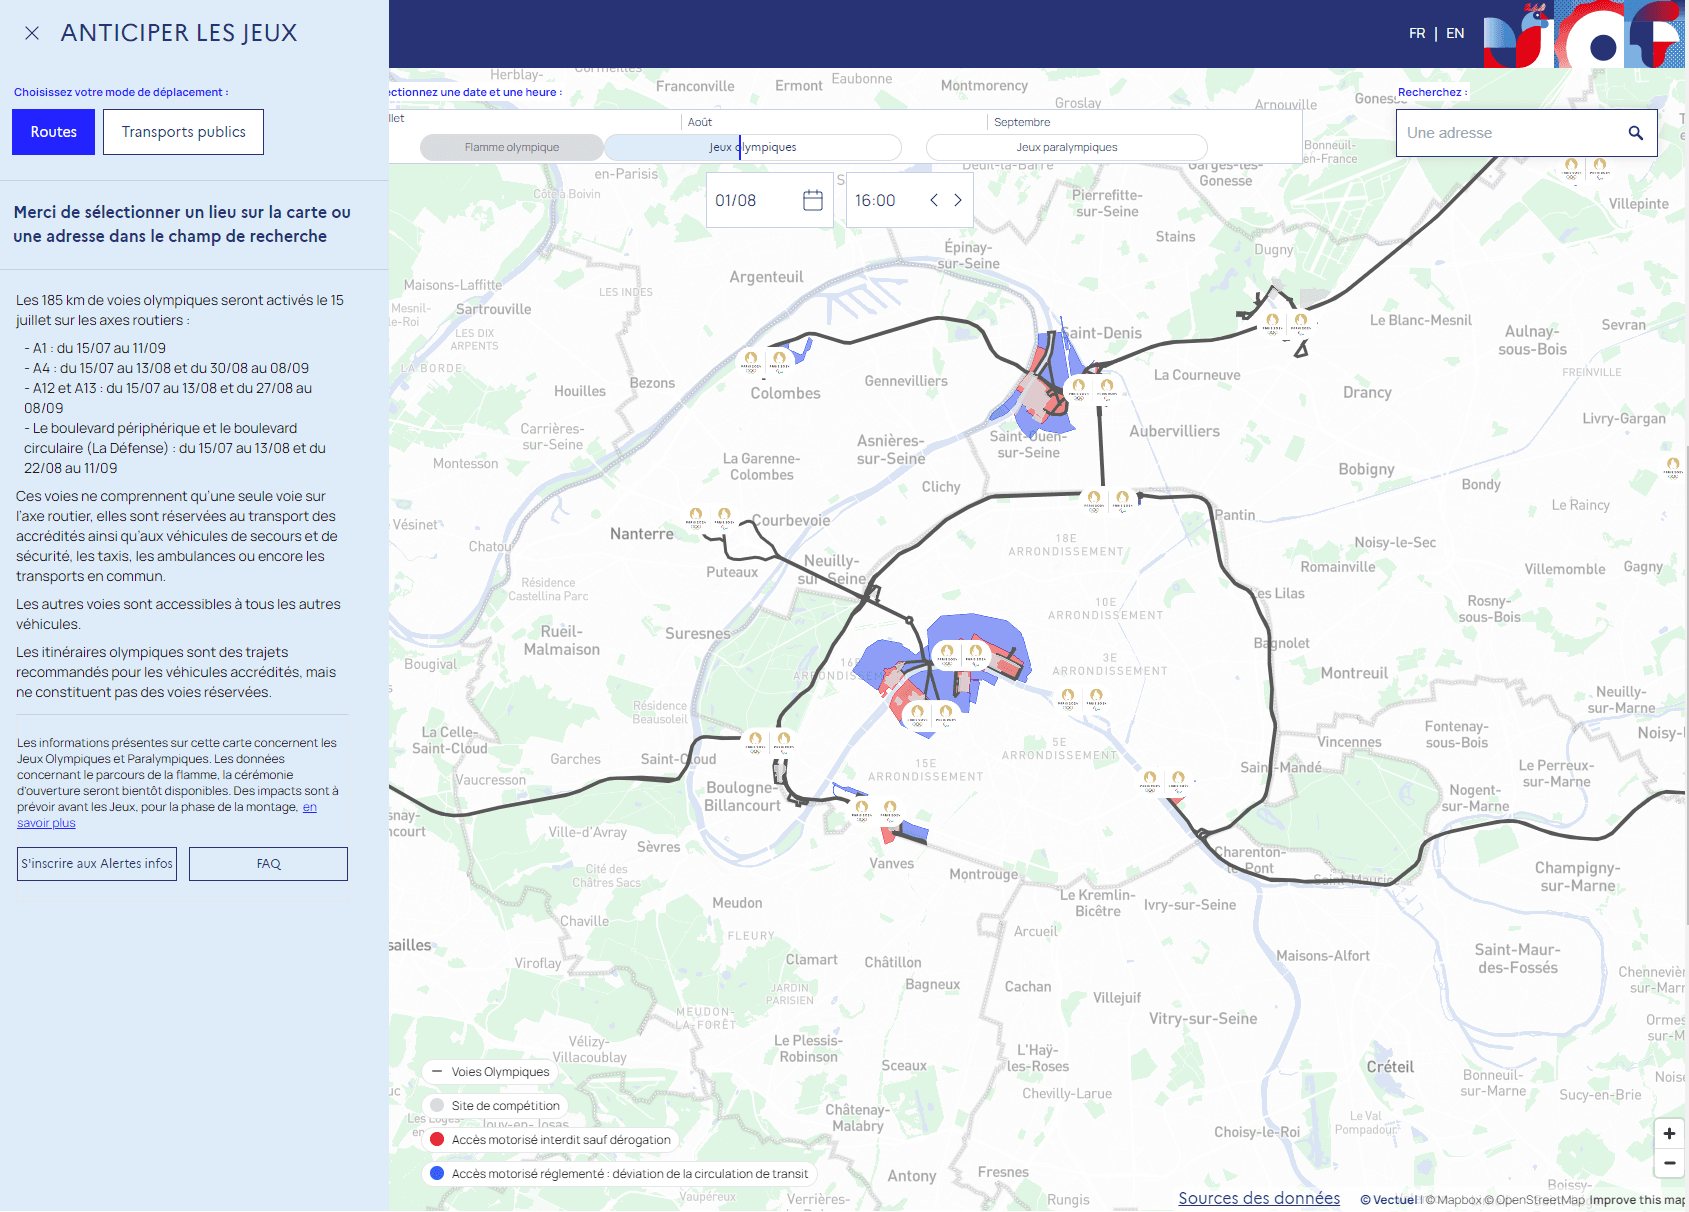 La carte interactive du gouvernement permet d'anticiper les difficultés de circulation durant la période des Jeux Olympiques et Paralympiques de Paris 2024.